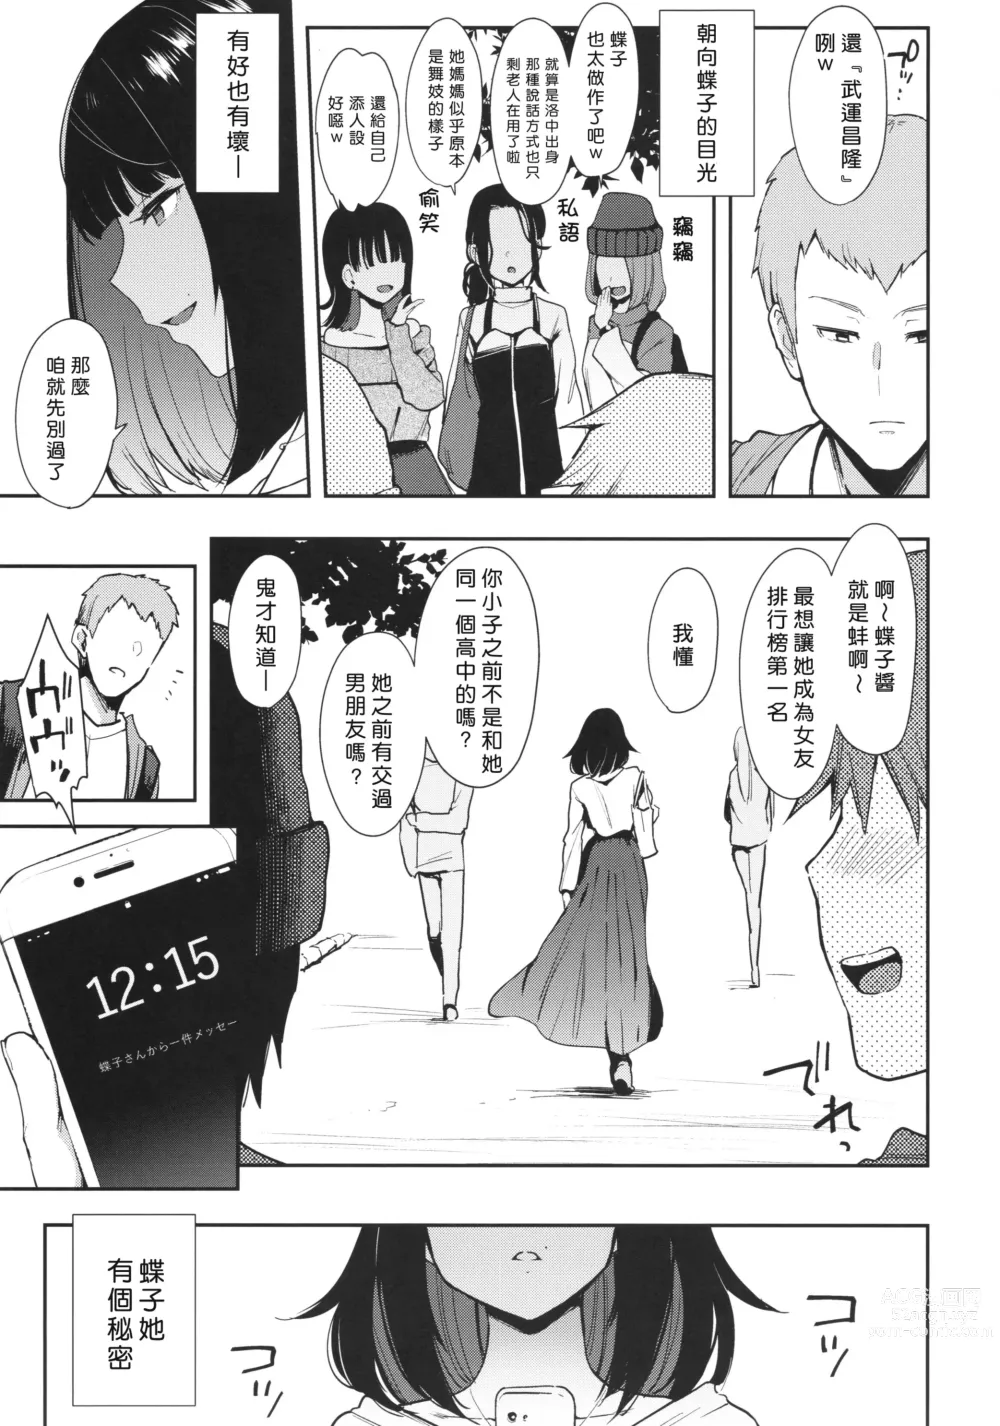 Page 6 of doujinshi Chouko I-V